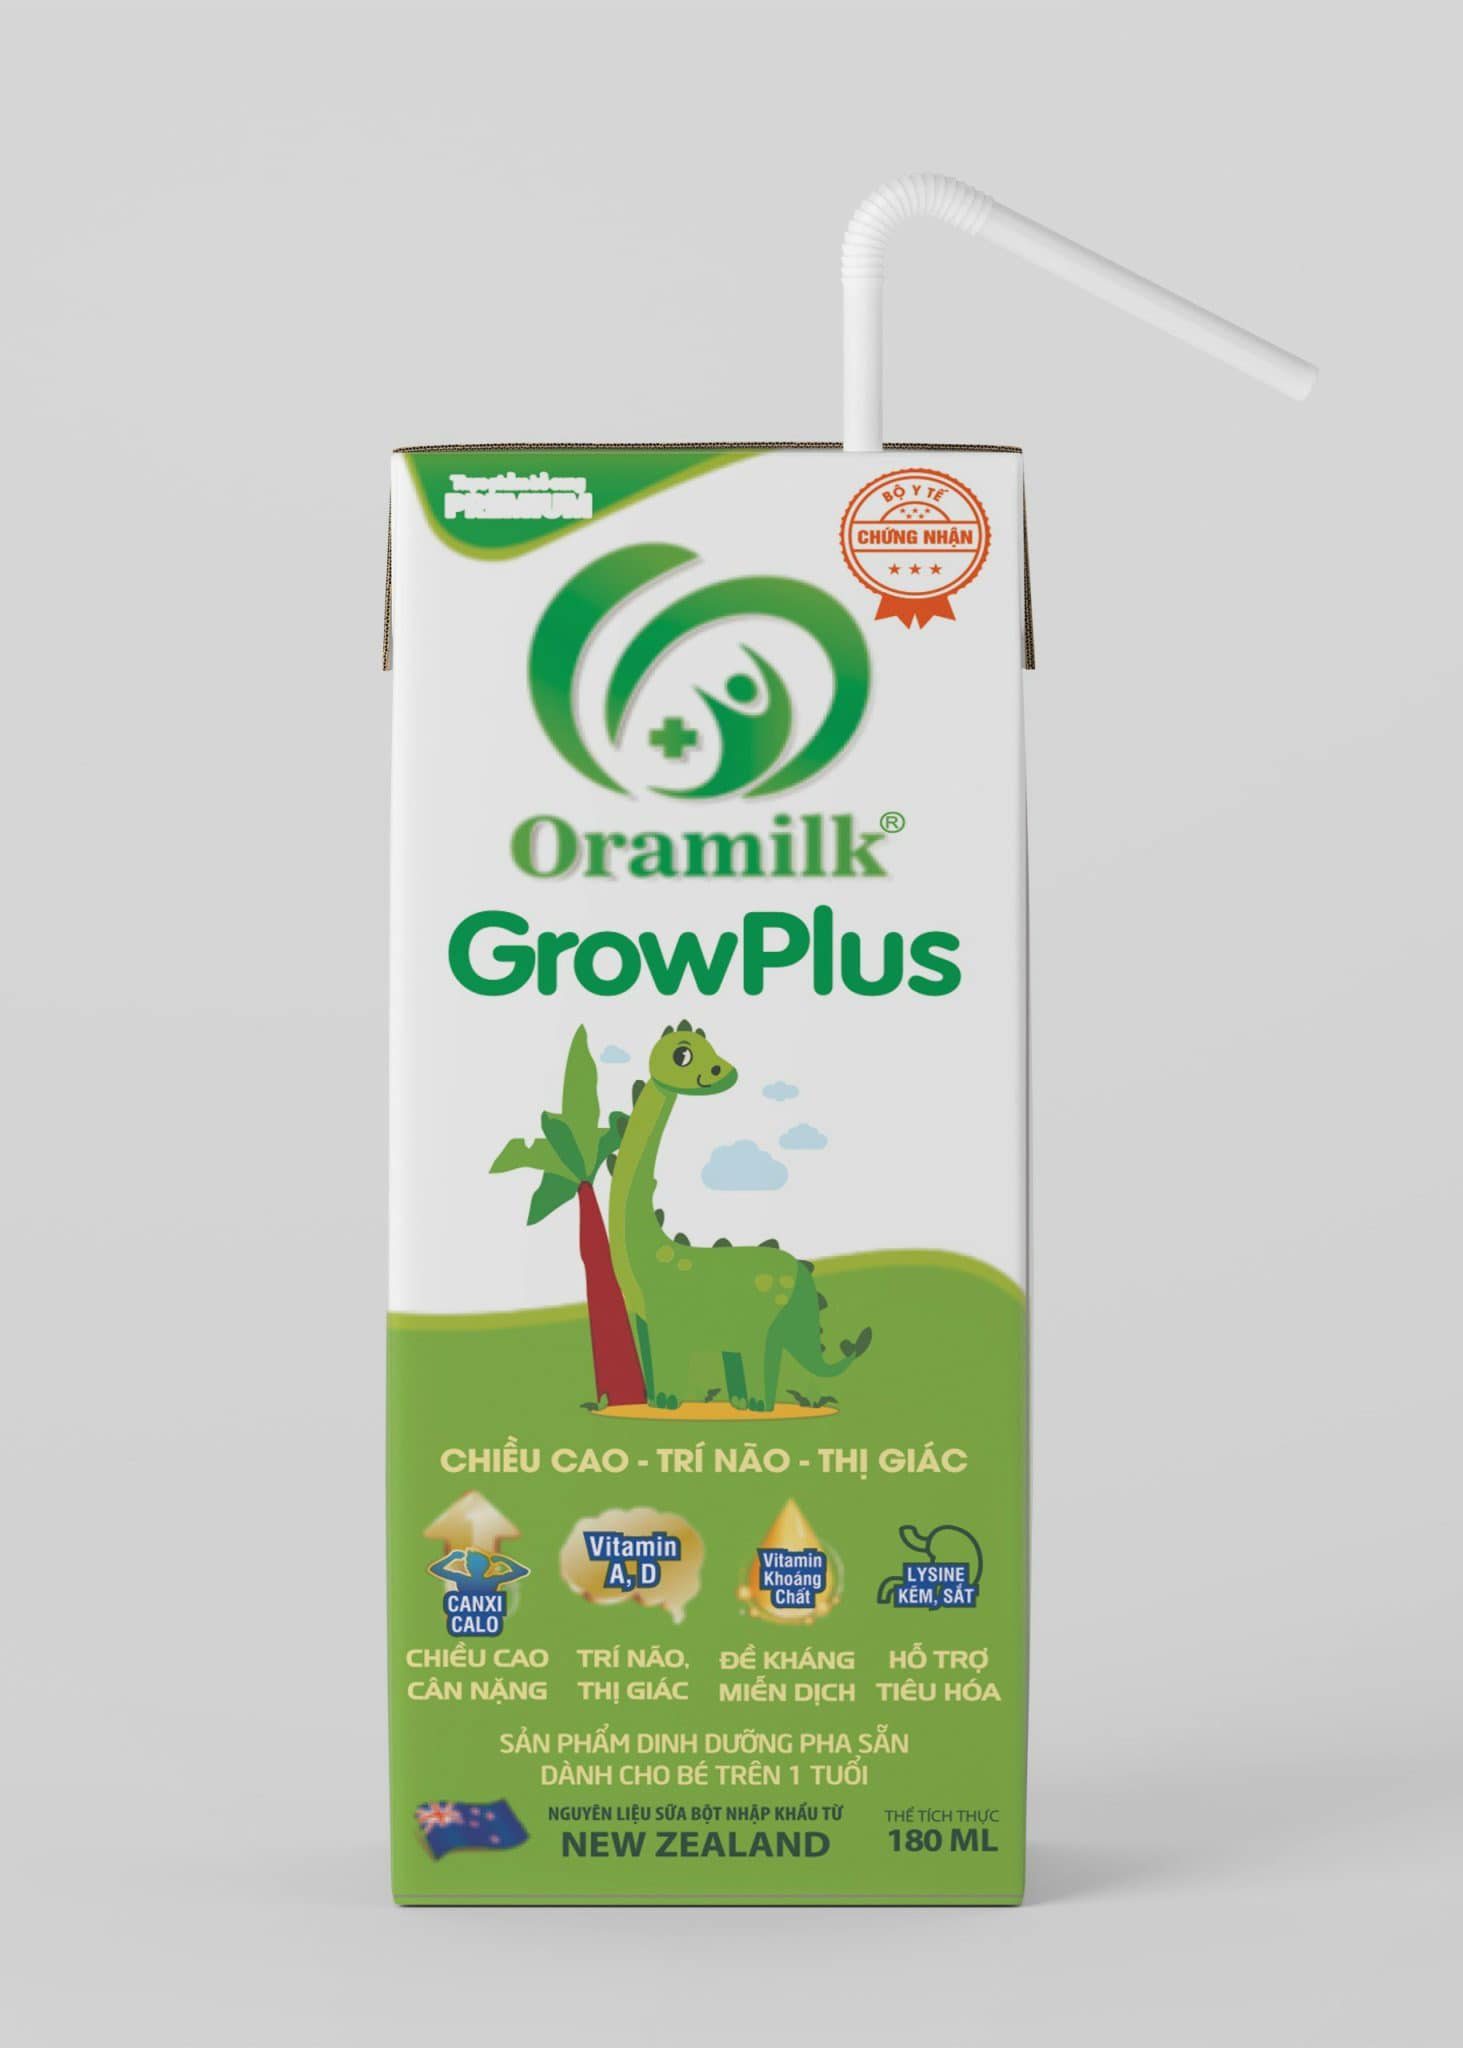 Lốc lẻ sữa pha sẵn Oramilk GROWPLUS 180ml - Tiêu hoá khoẻ, hấp thu tốt - Phát triển chiều cao, trí não - Dành cho trẻ trên 1 tuổi